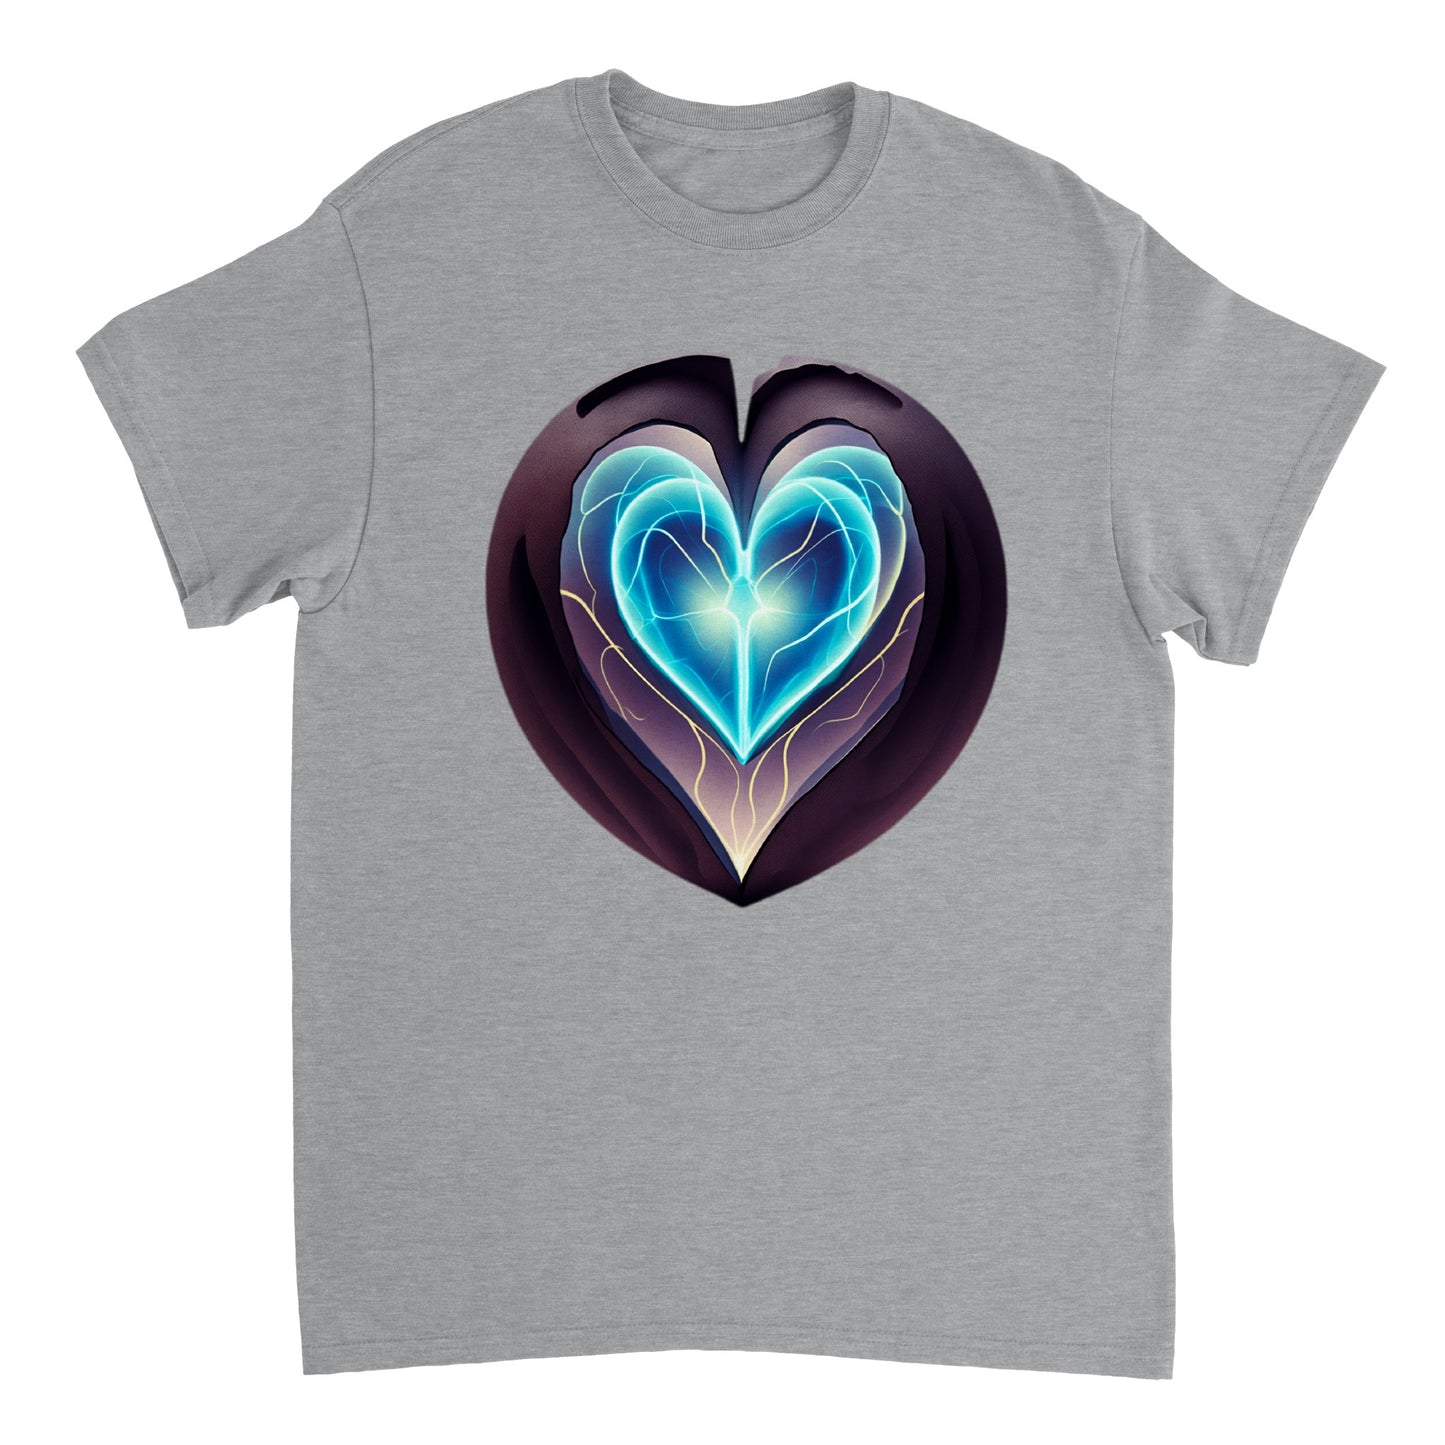 Love Heart - Heavyweight Unisex Crewneck T-shirt 99